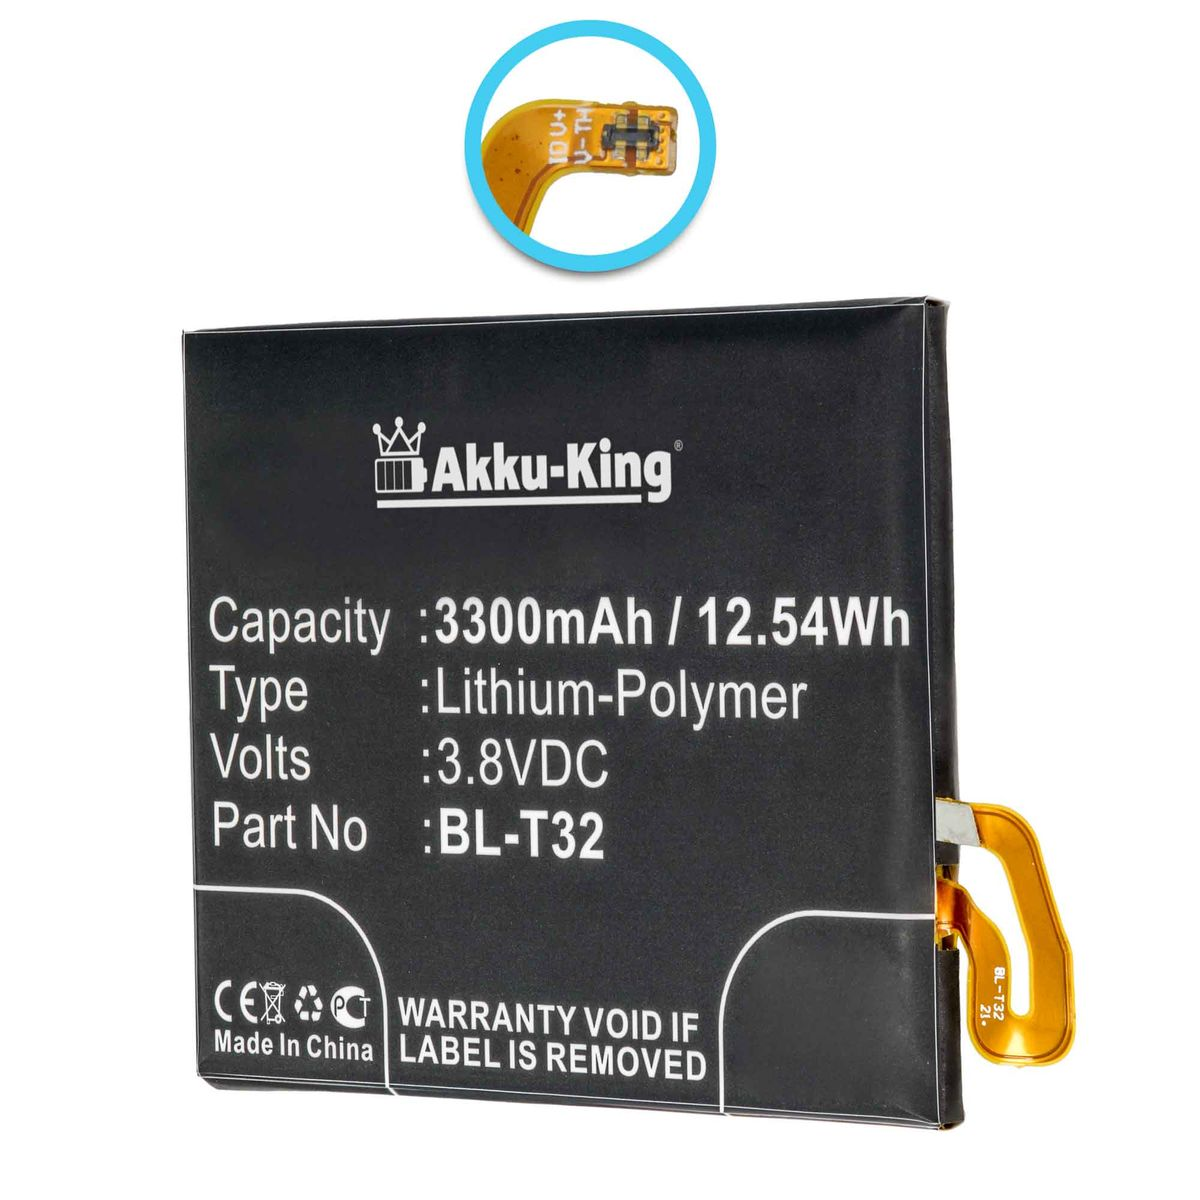 AKKU-KING Akku kompatibel mit LG Volt, 3.8 BL-T32 3300mAh Li-Polymer Handy-Akku